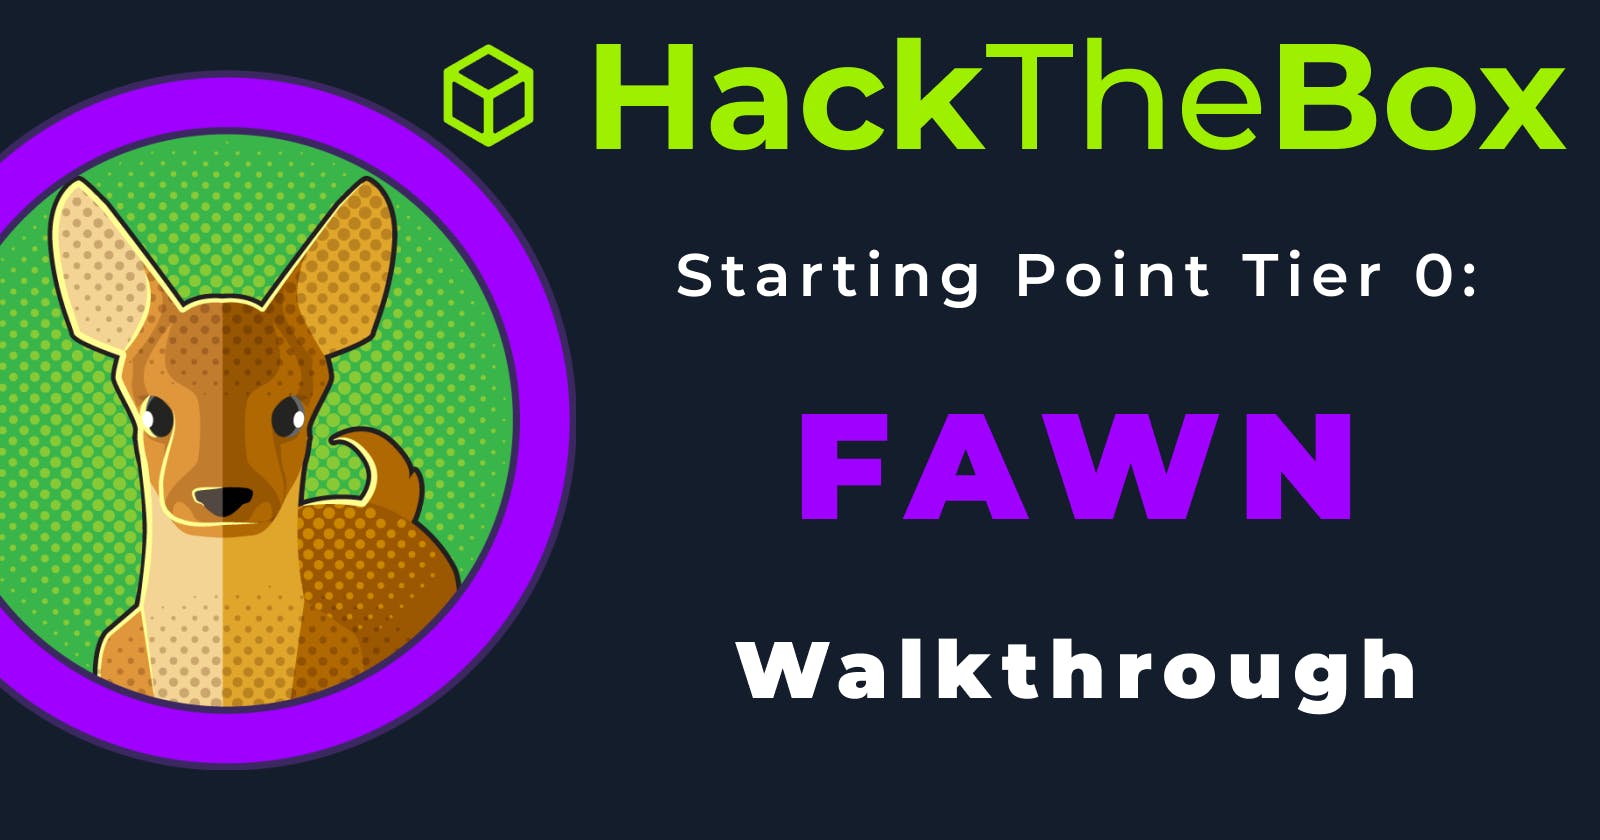 HackTheBox Starting Point Tier 0 machine: Fawn Walkthrough